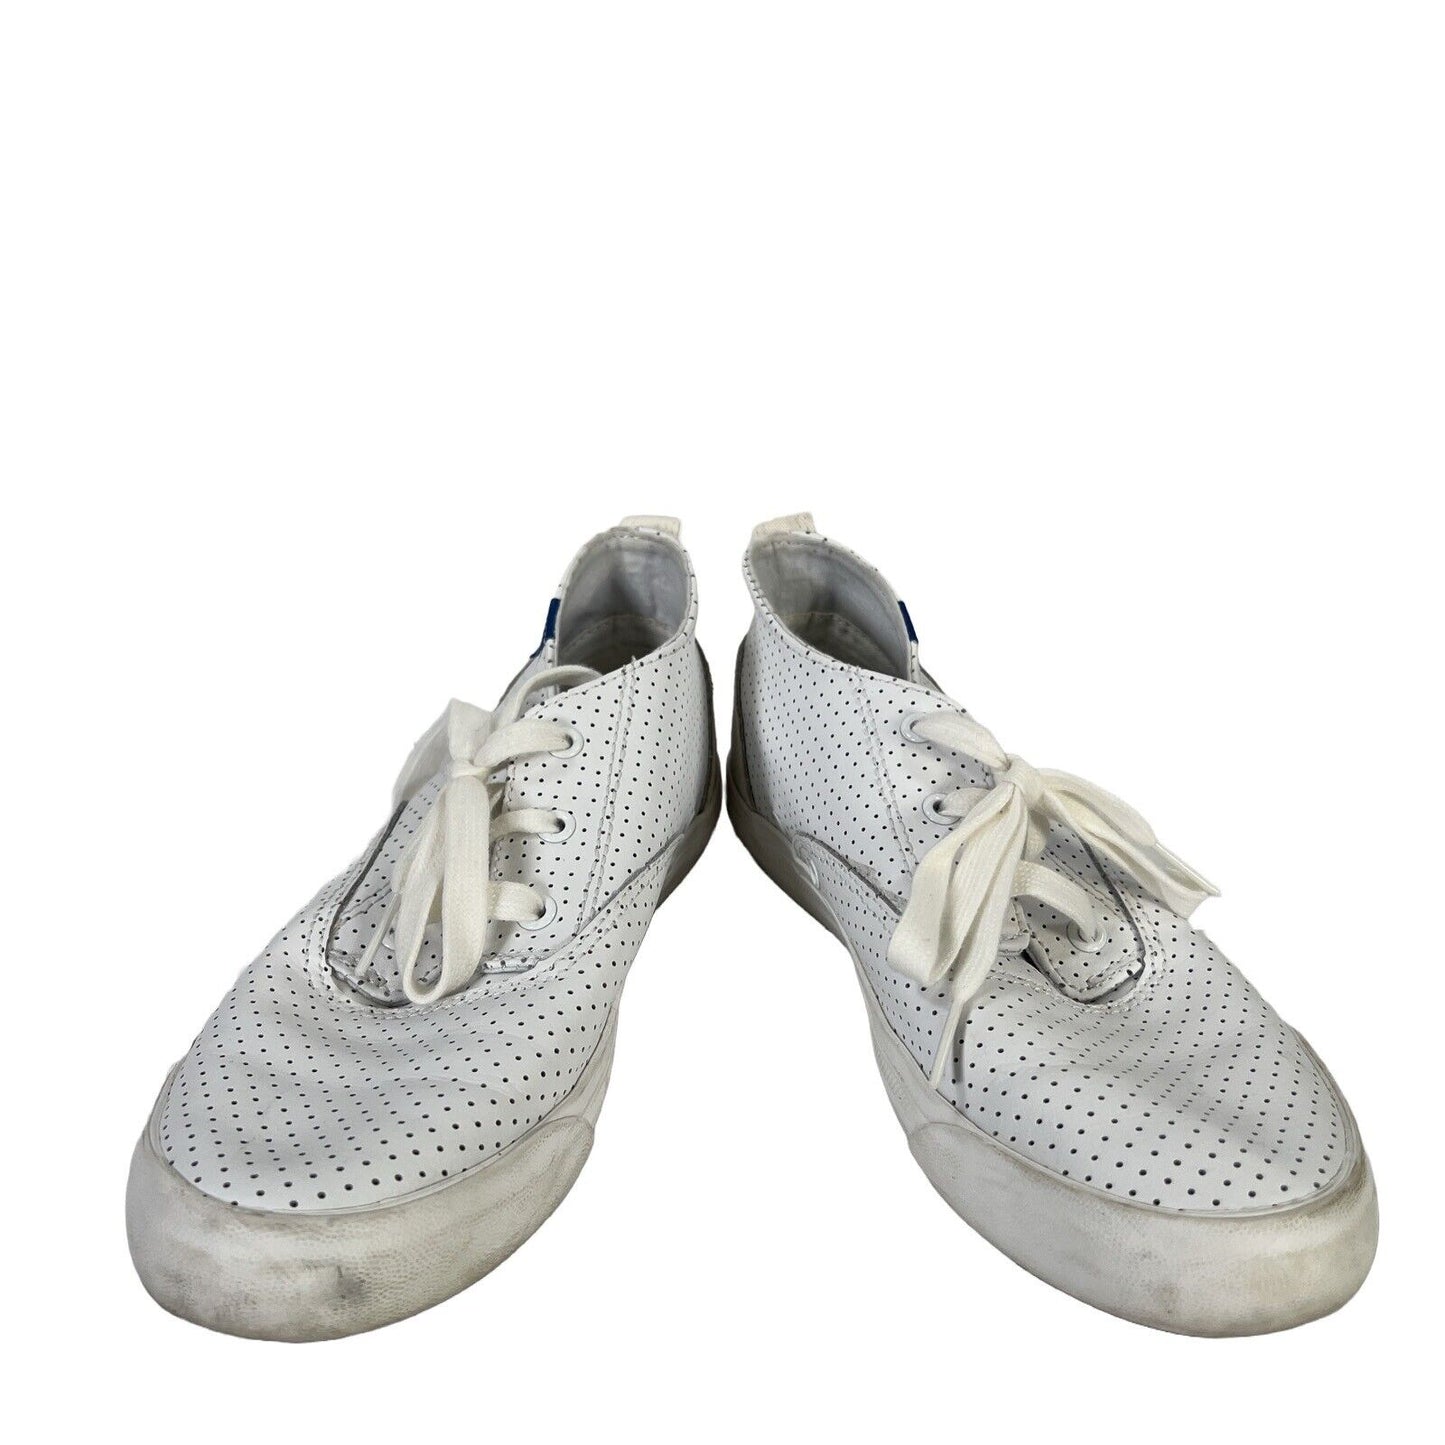 Keds Zapatillas de deporte con cordones de cuero perforado blanco para mujer - 7